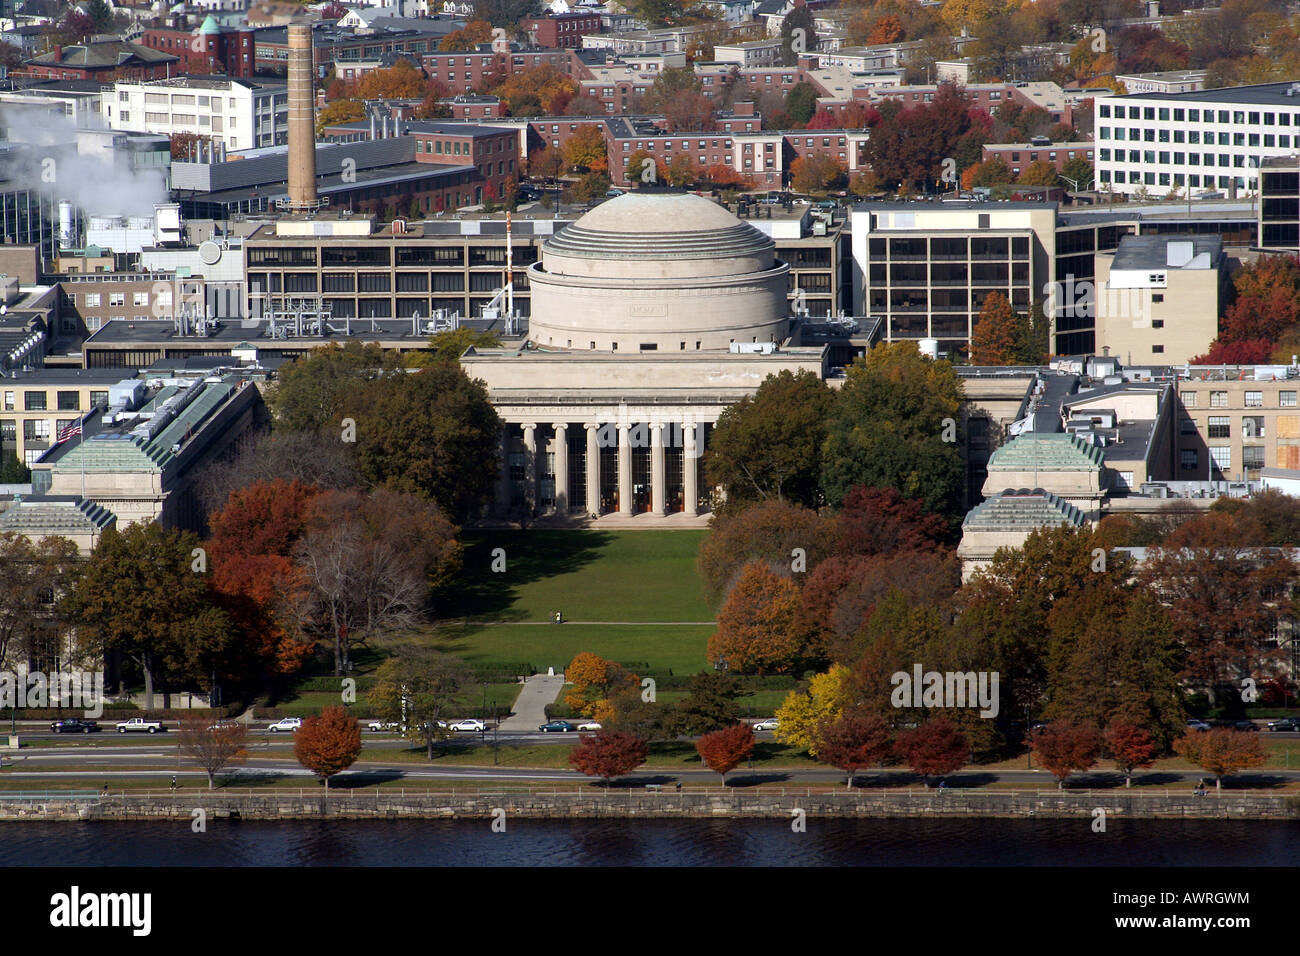 Stock Photo de una vista aérea del Instituto de Tecnología de Massachusetts Foto de stock